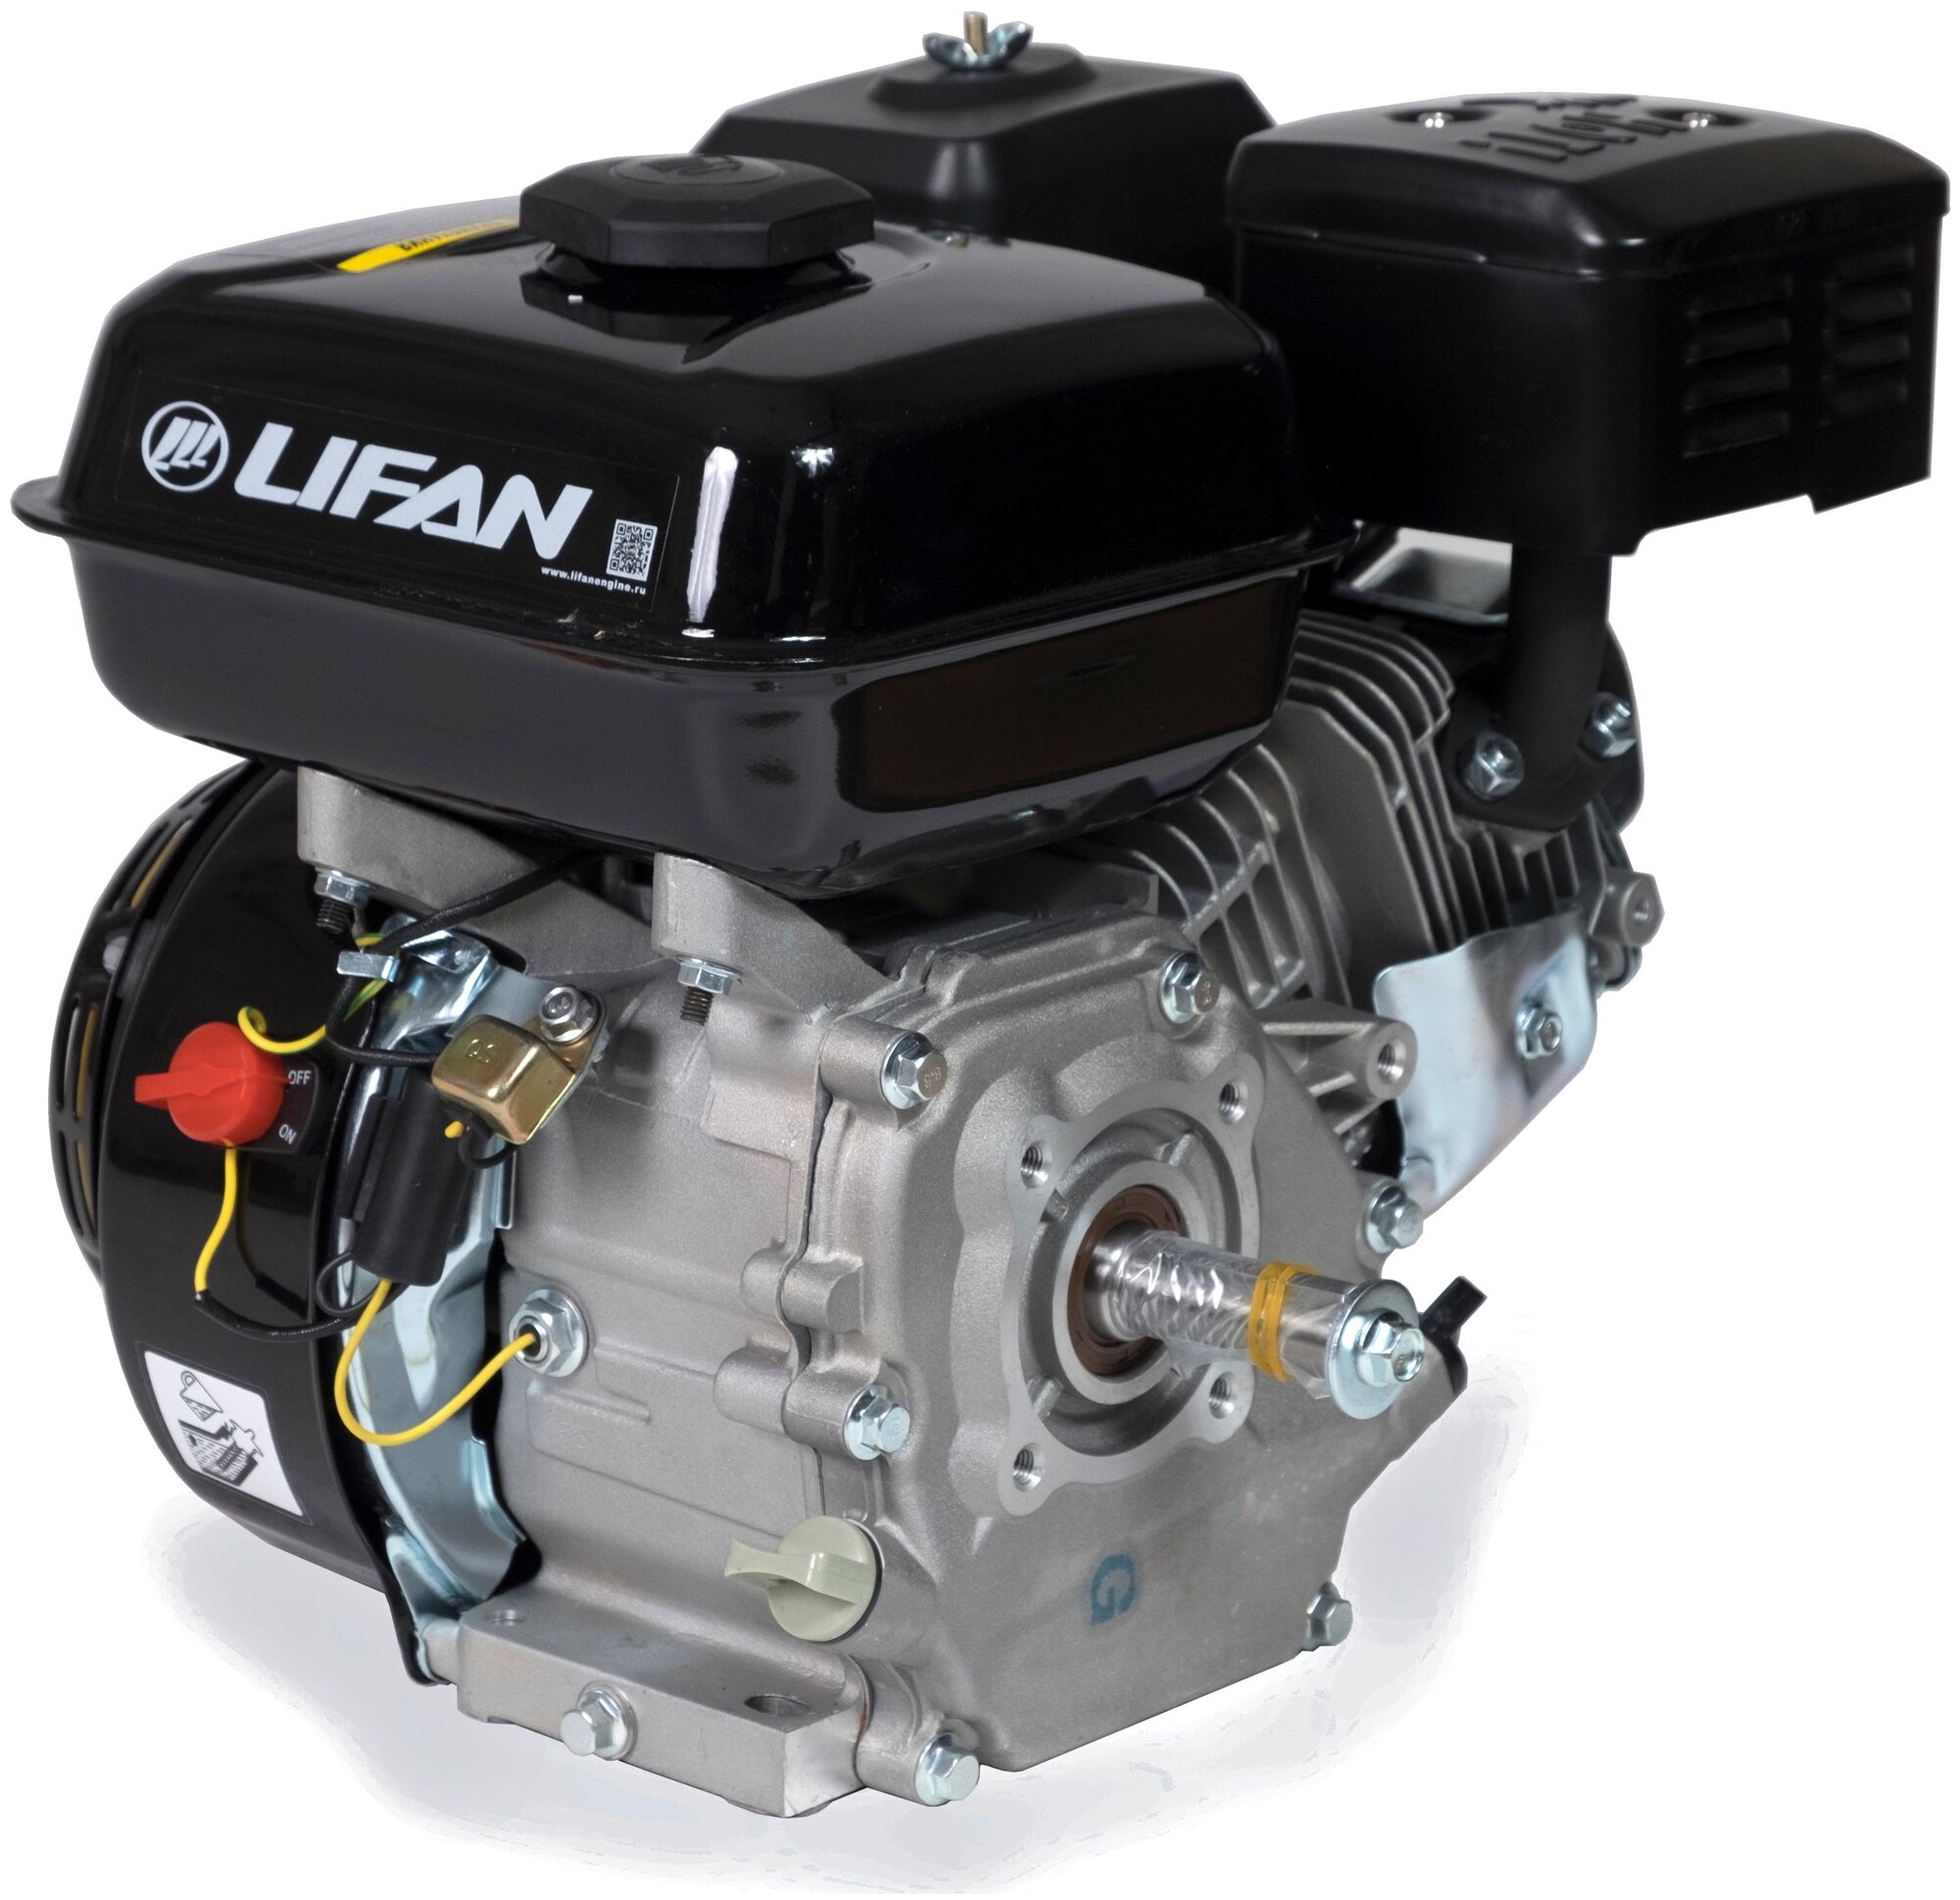 Бензиновый двигатель LIFAN 168F-2 D19 65 лс